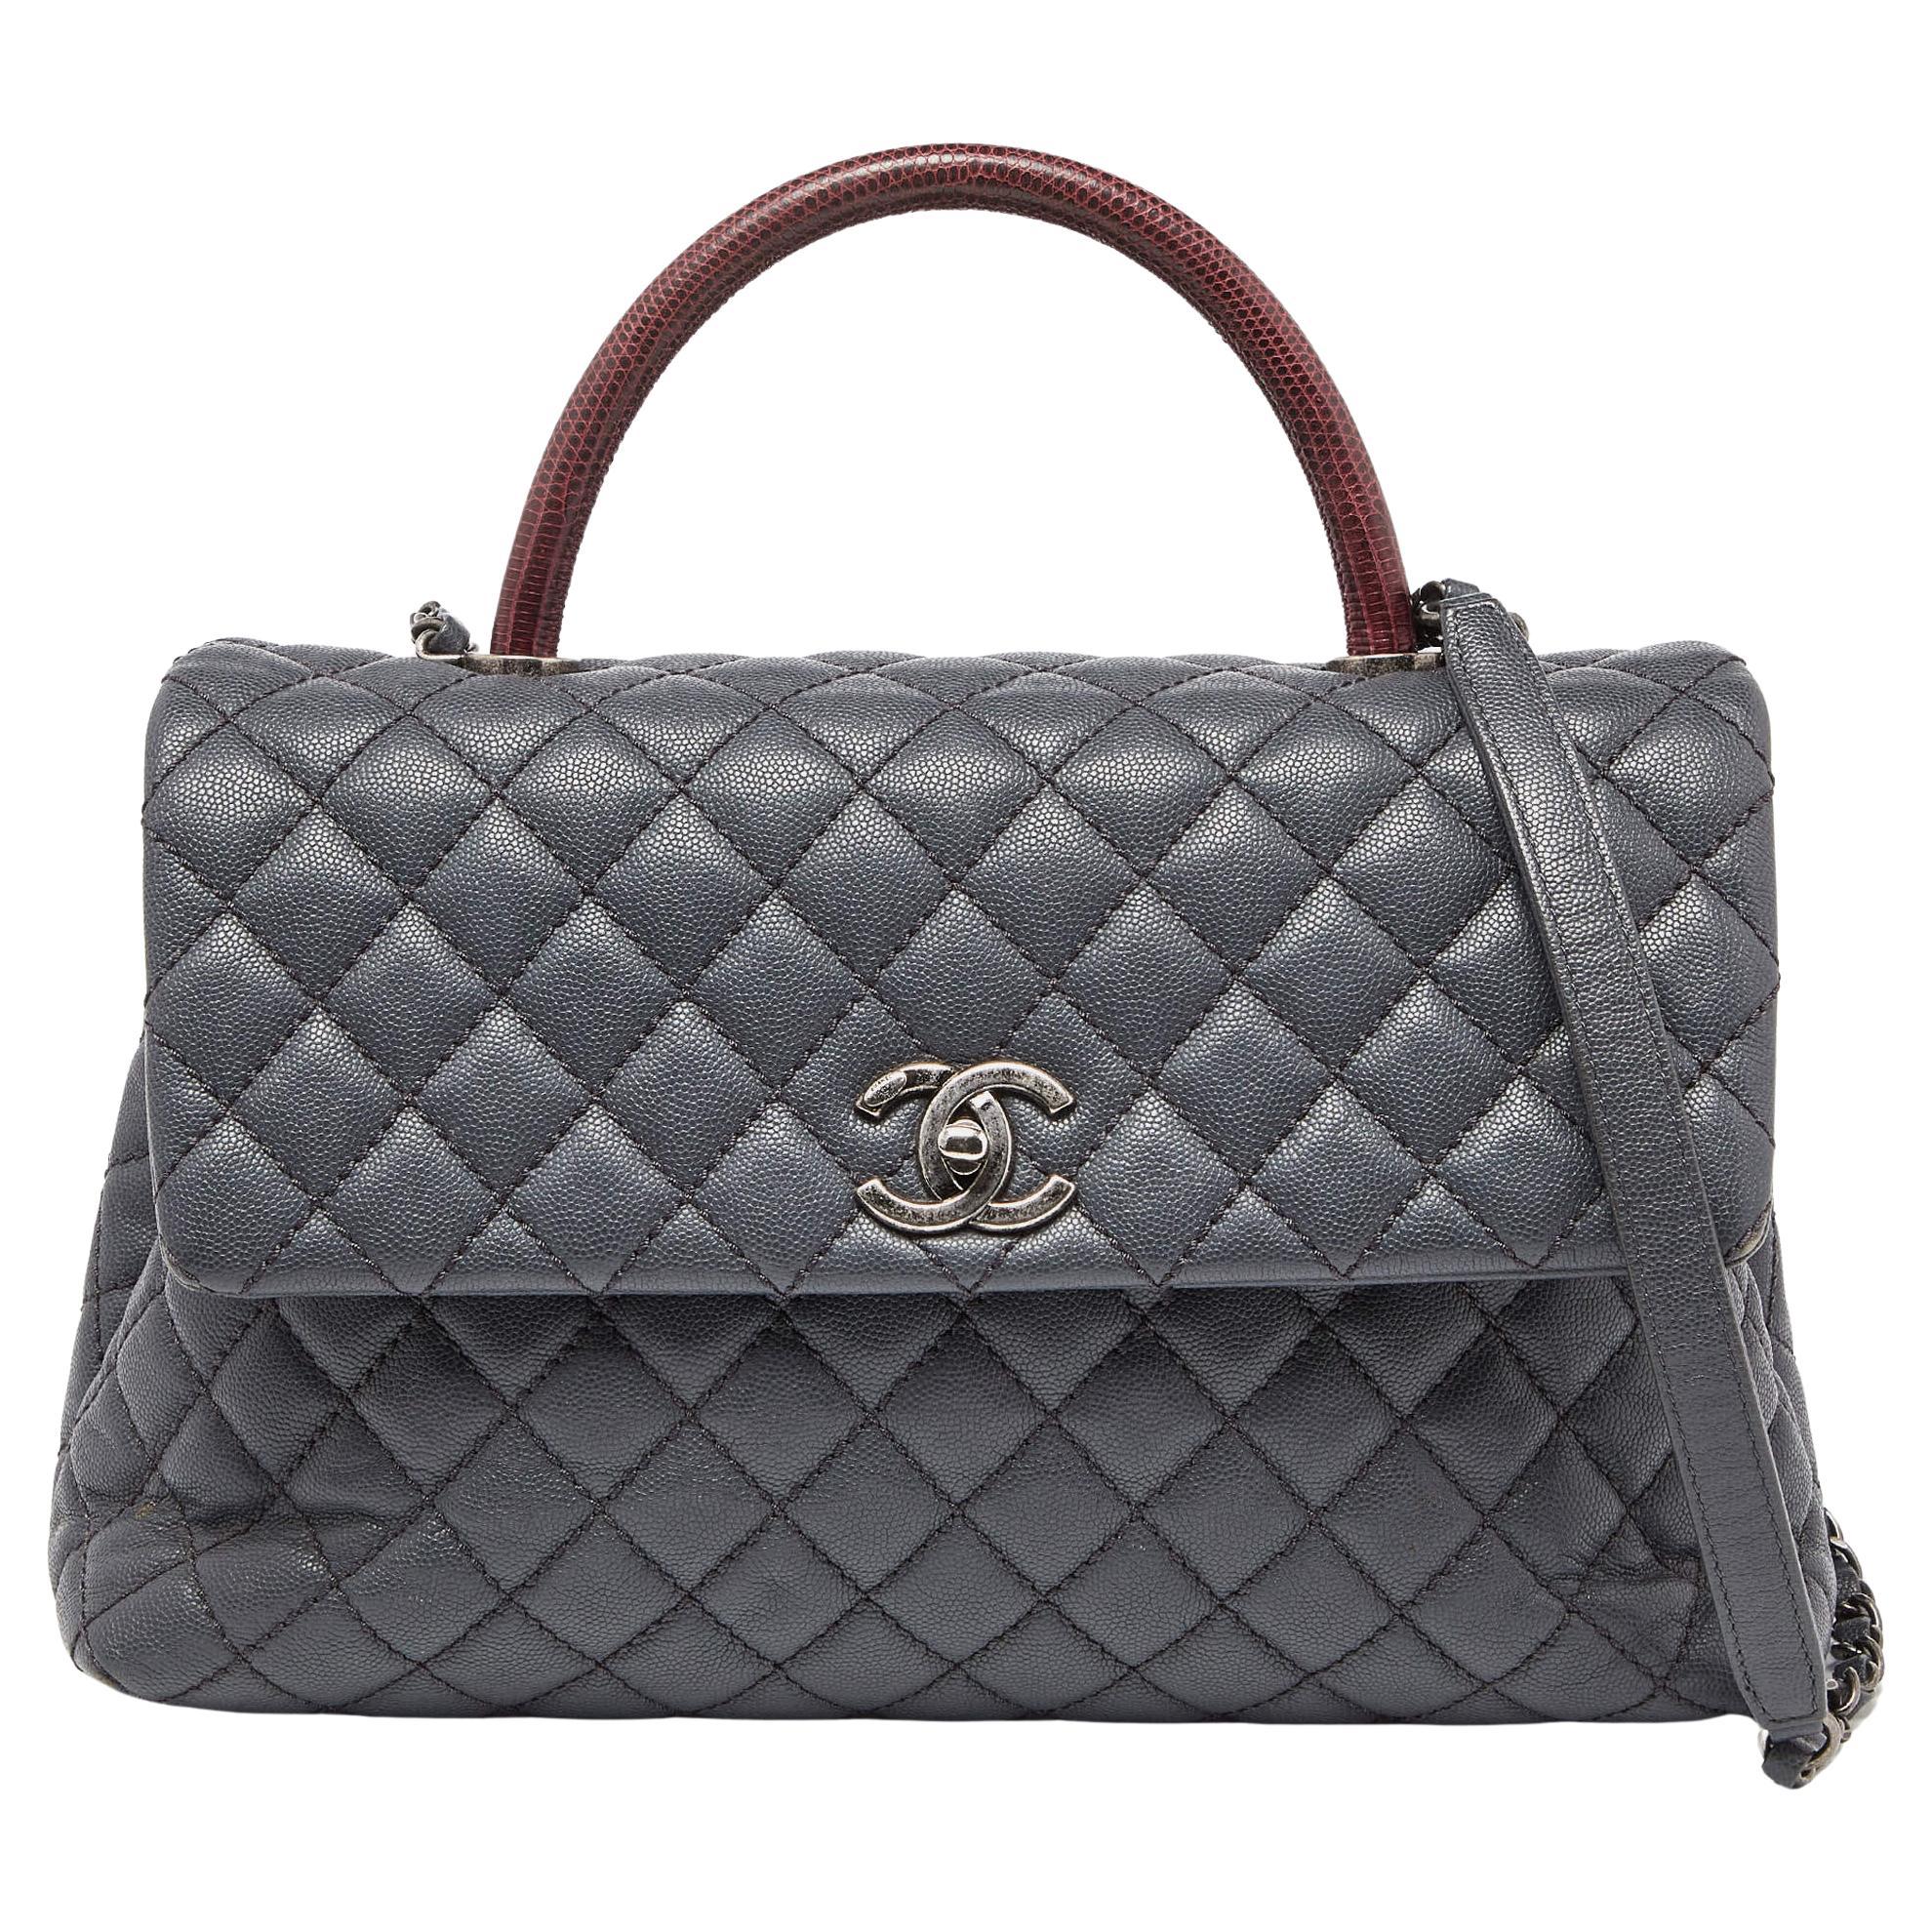 Chanel Medium Coco Top Handle Bag aus grauem/rotem Kaviarleder und Eidechsenleder